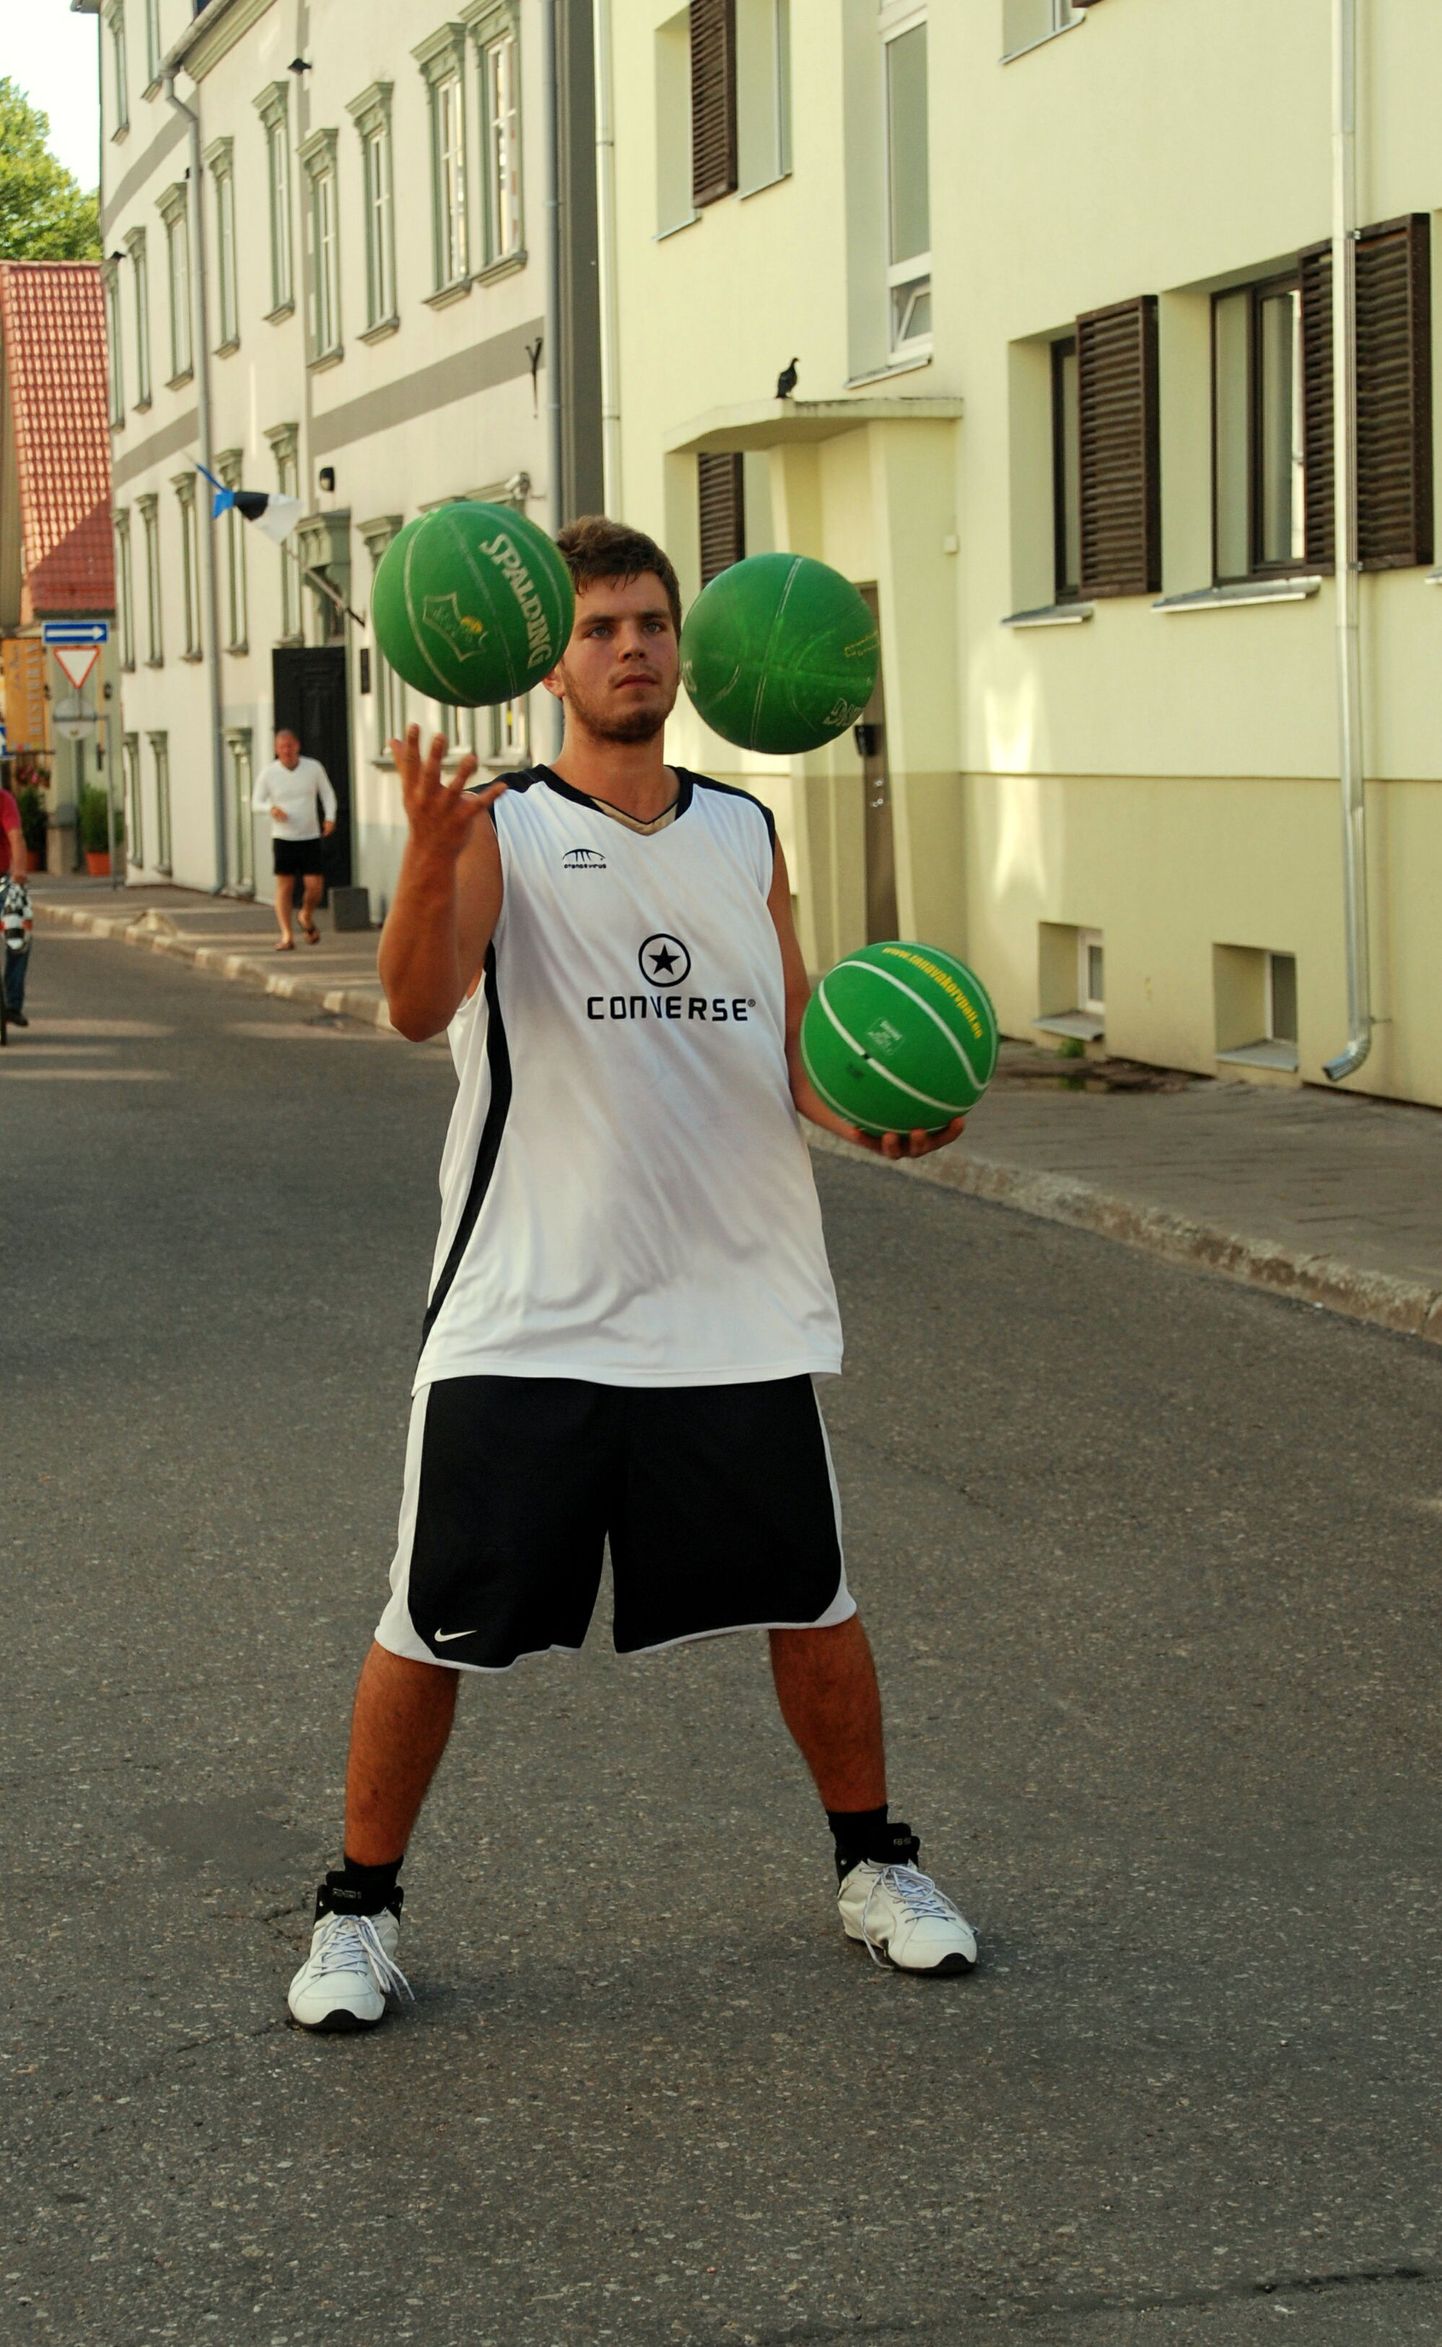 Talendisaates tuntuks saanud Roman Fedorenko teenib pallitrikkidega tänaval raha.